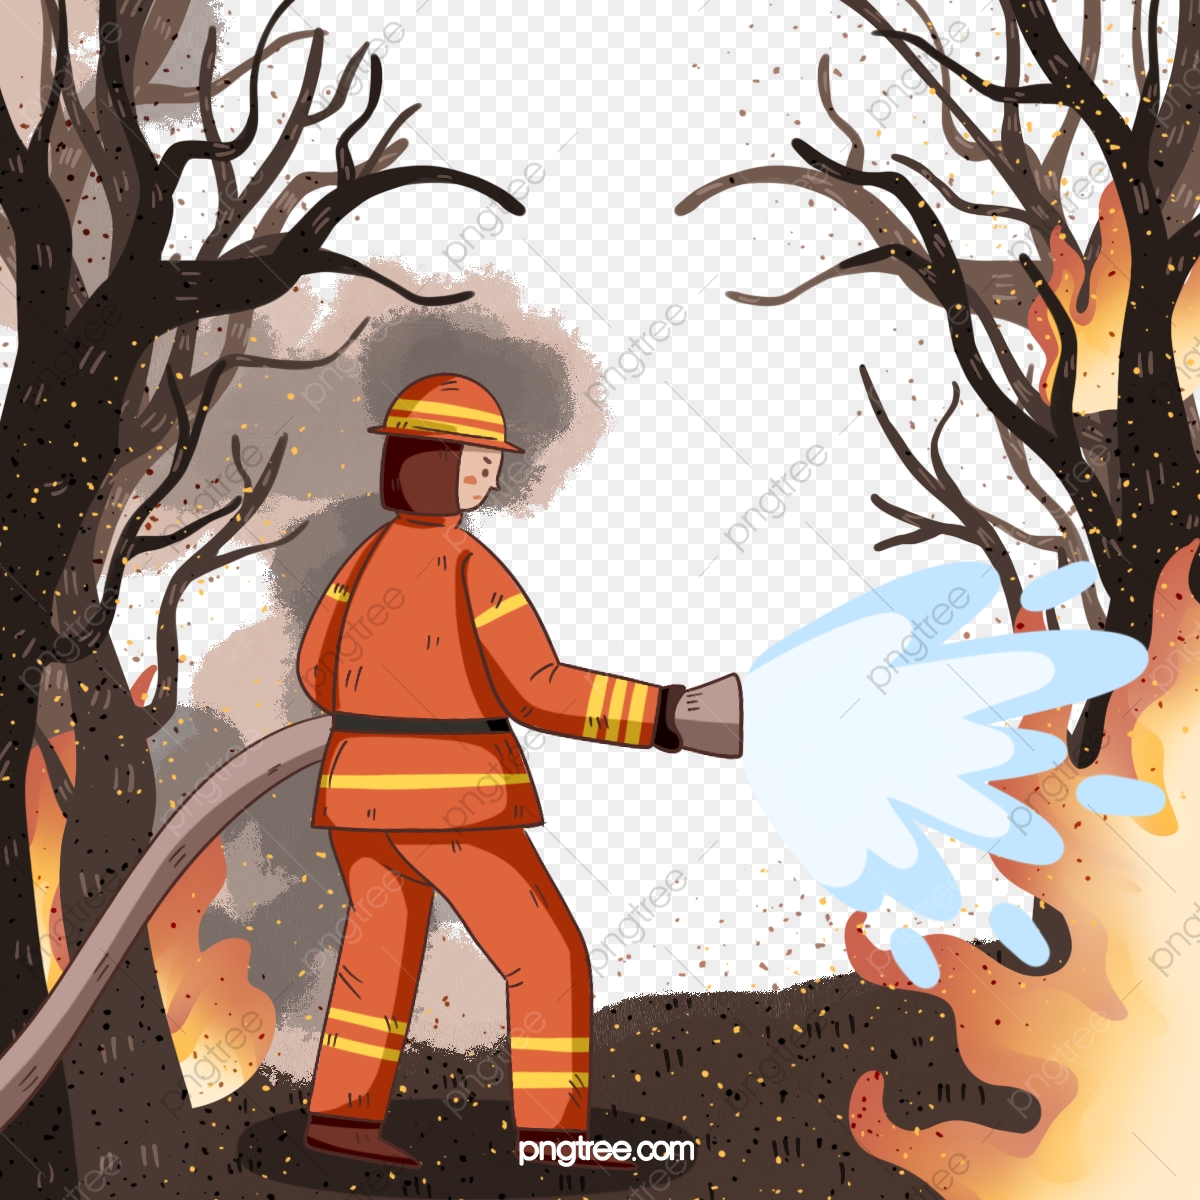 Revue de presse / Actu Toulouse du 24/03/2021 / Incendie en Haute-Garonne. 10 hectares de végétation partent en fumée, 40 pompiers mobilisés